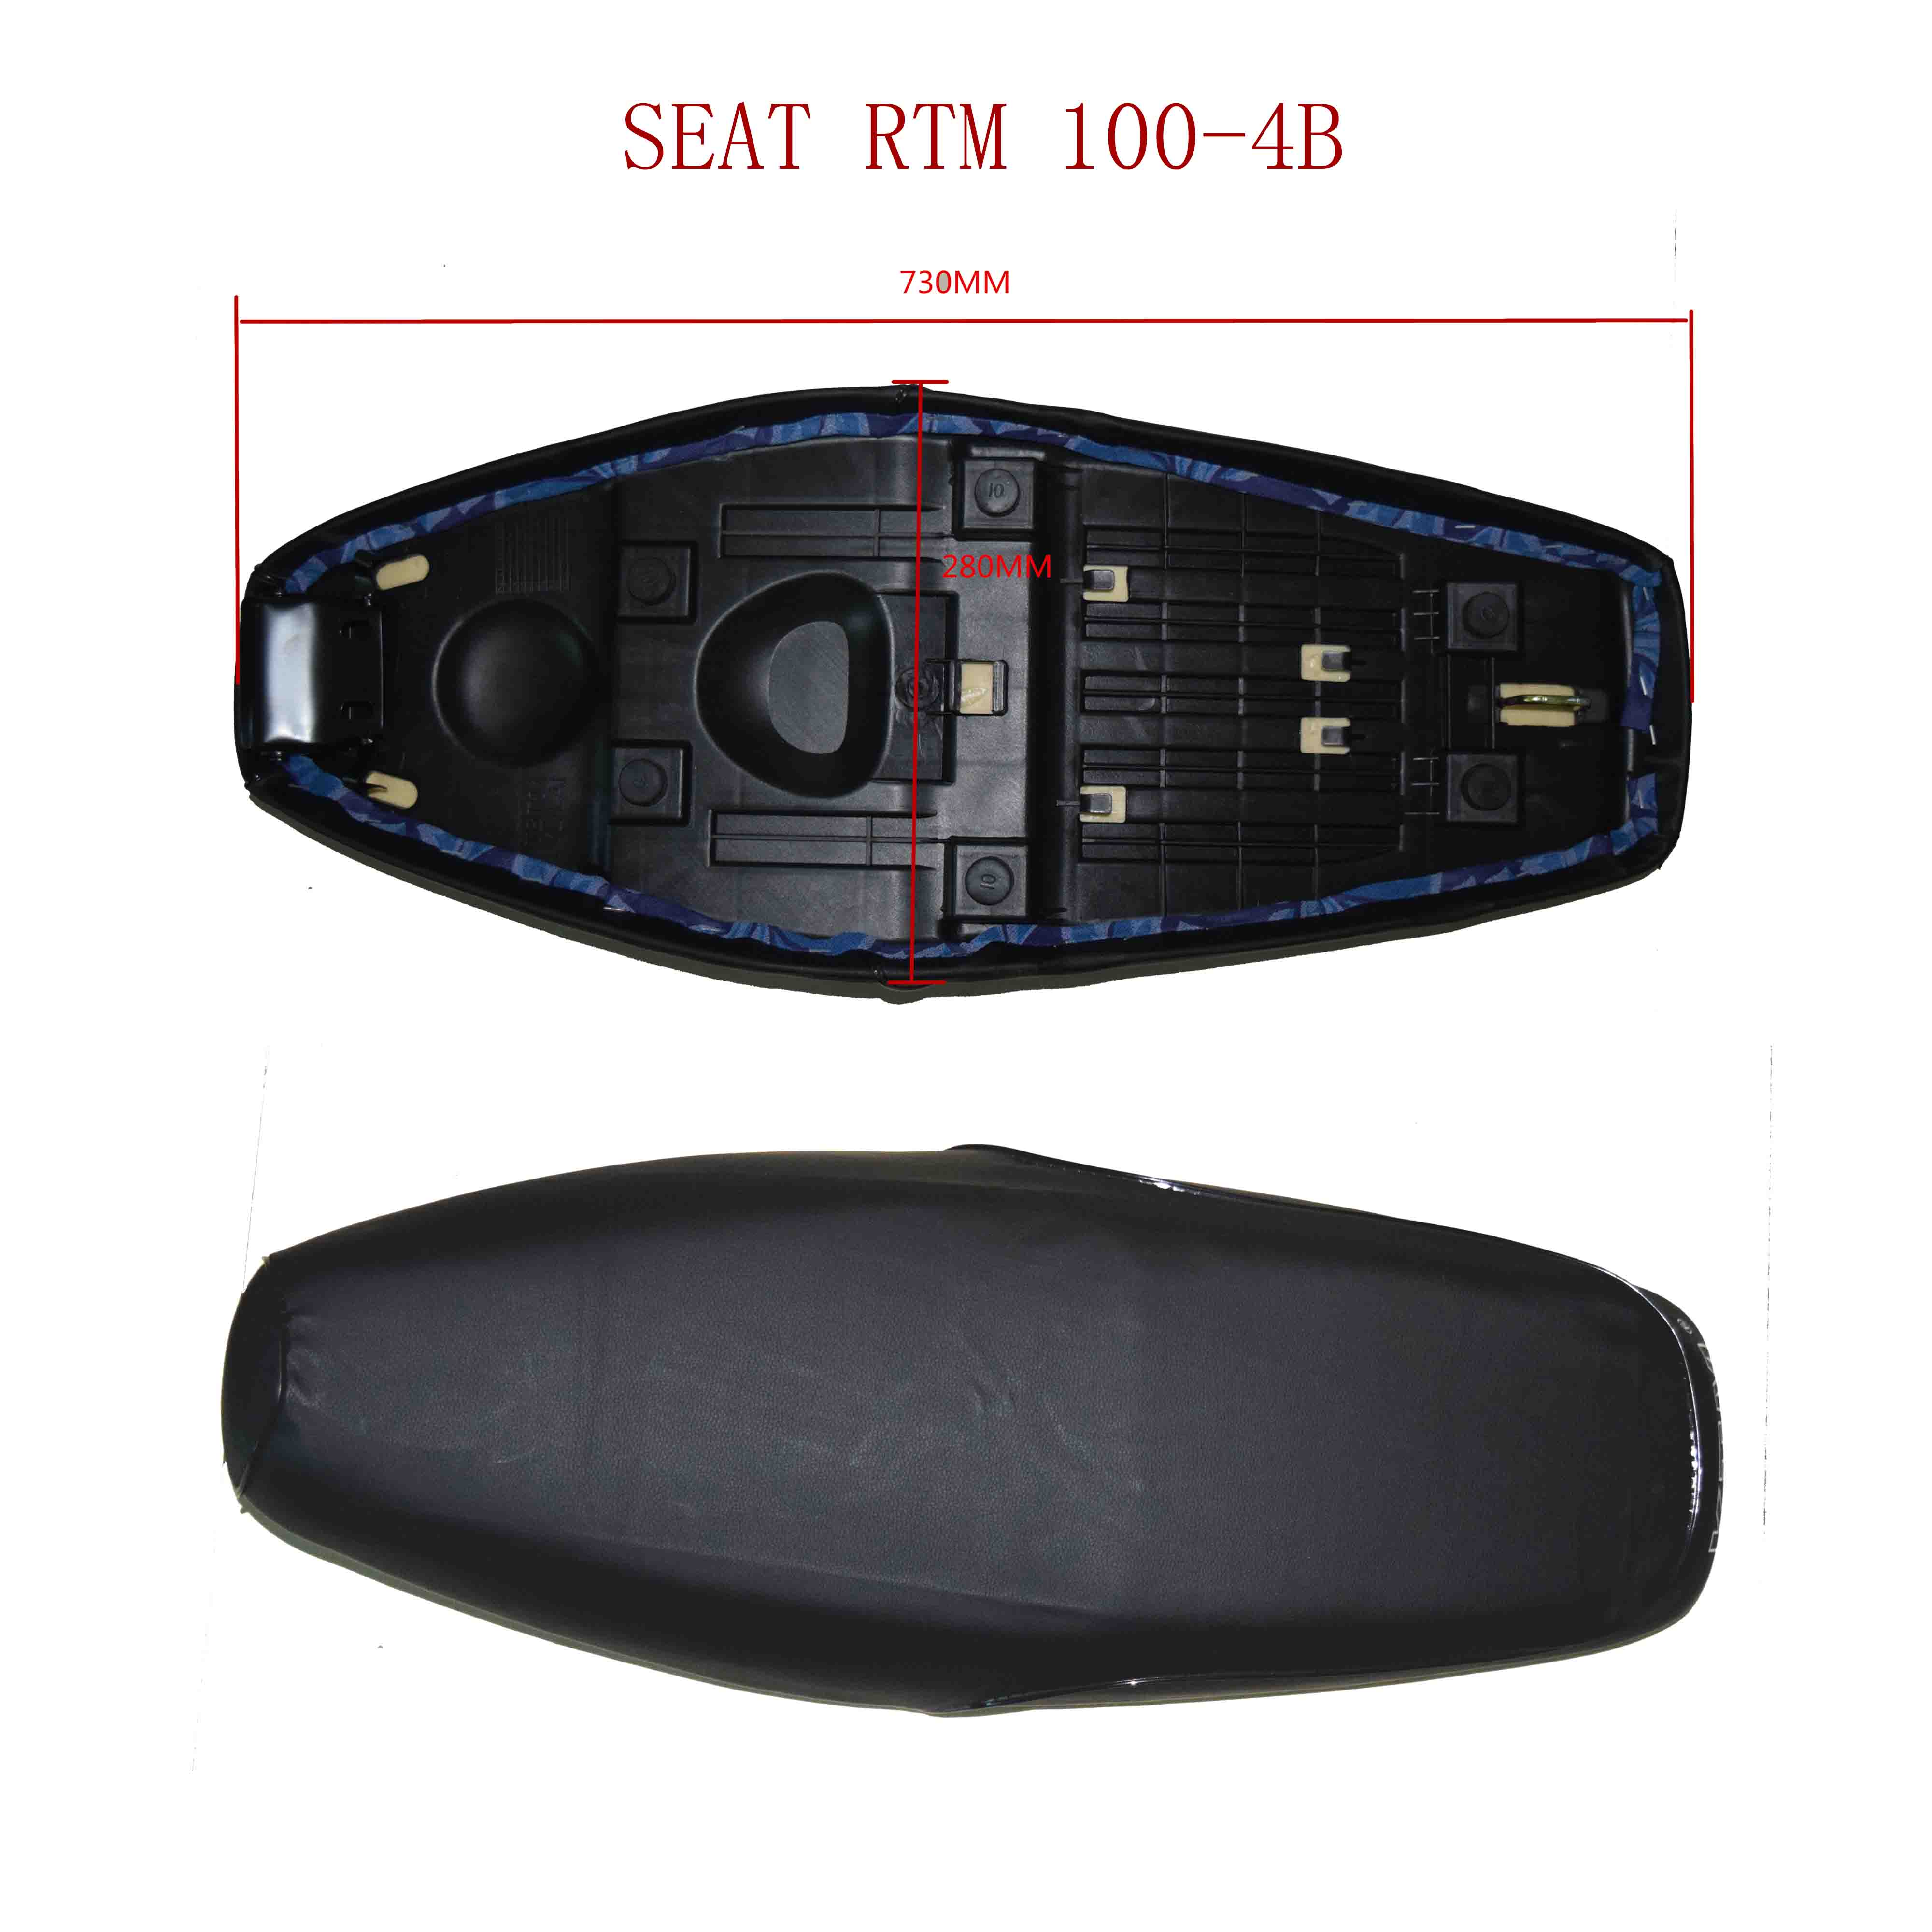 SEAT RTM 100-4B 